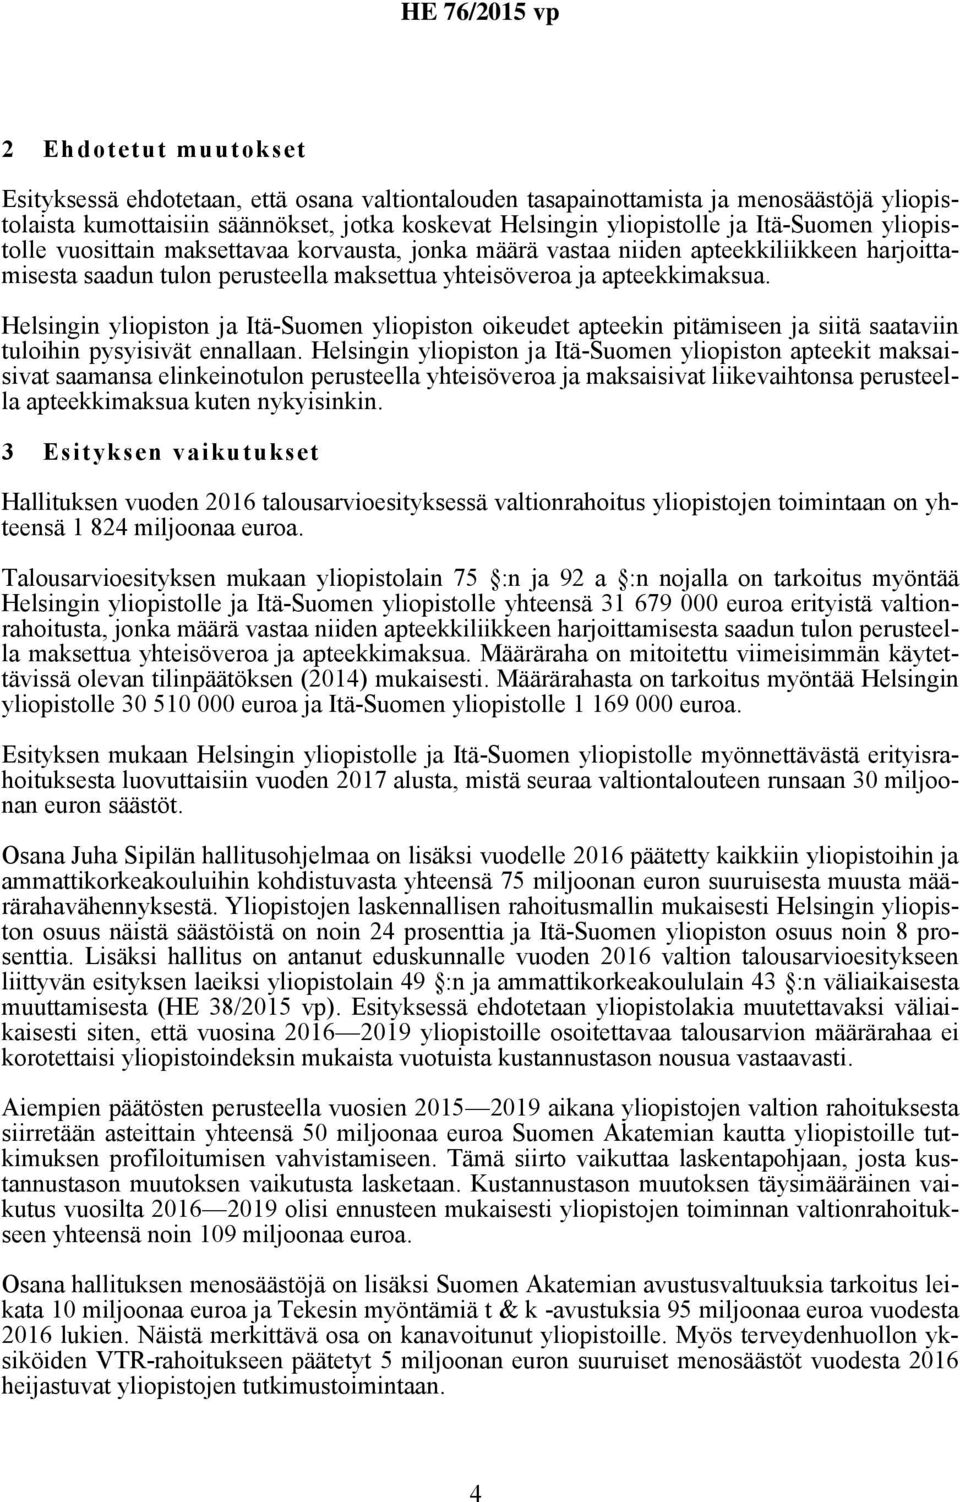 Helsingin yliopiston ja Itä-Suomen yliopiston oikeudet apteekin pitämiseen ja siitä saataviin tuloihin pysyisivät ennallaan.